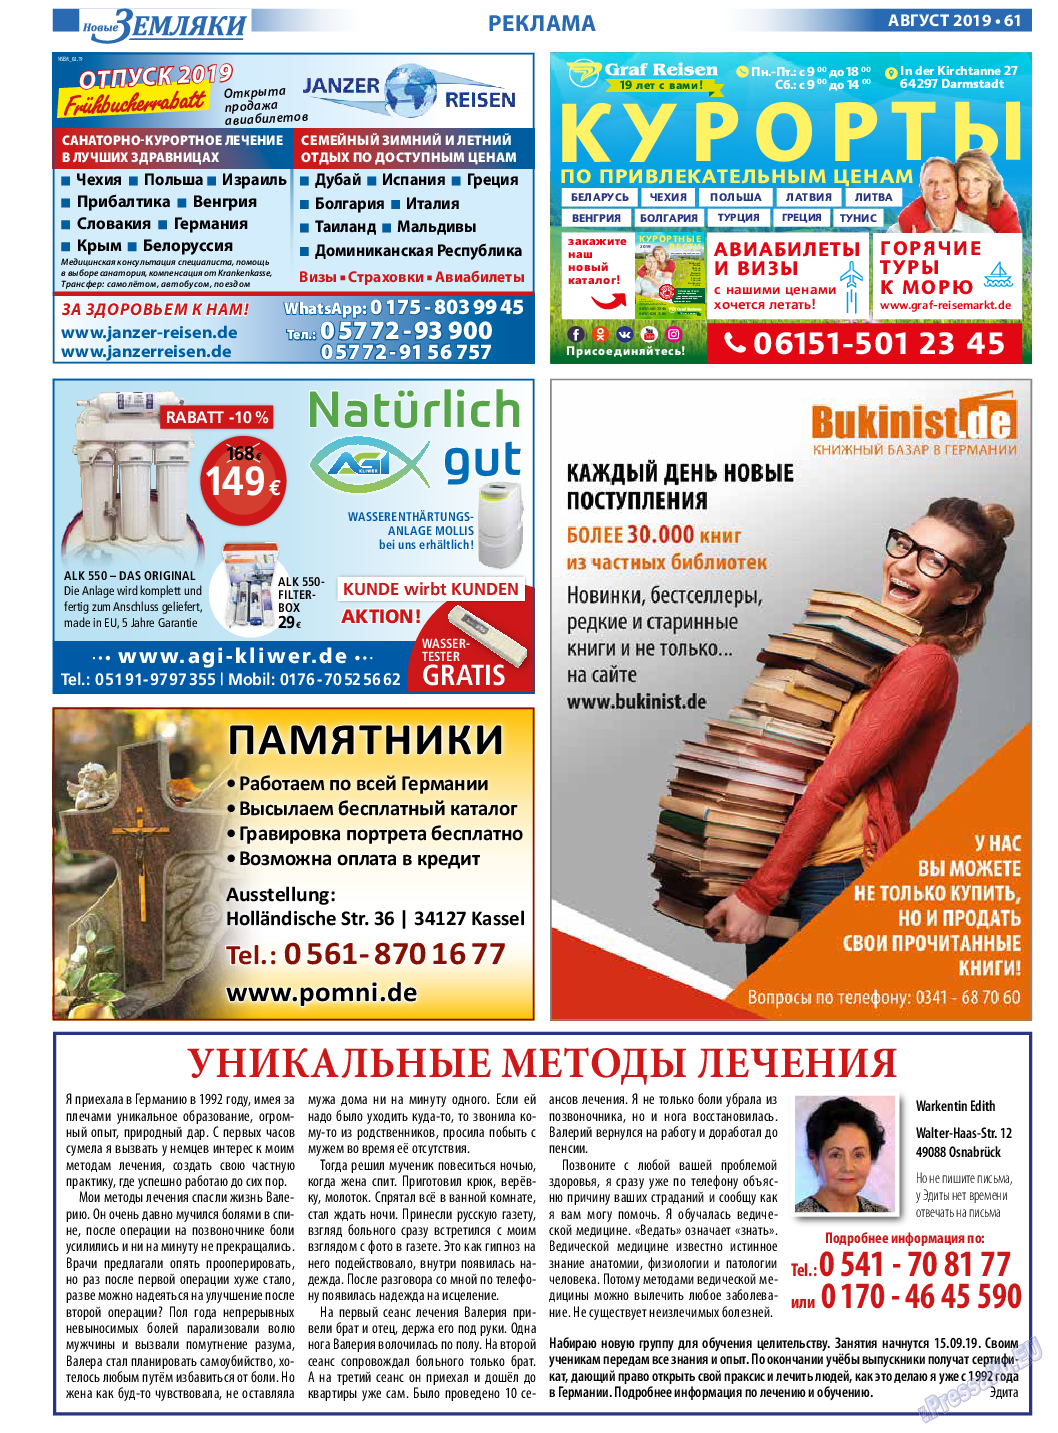 Новые Земляки (газета). 2019 год, номер 8, стр. 61